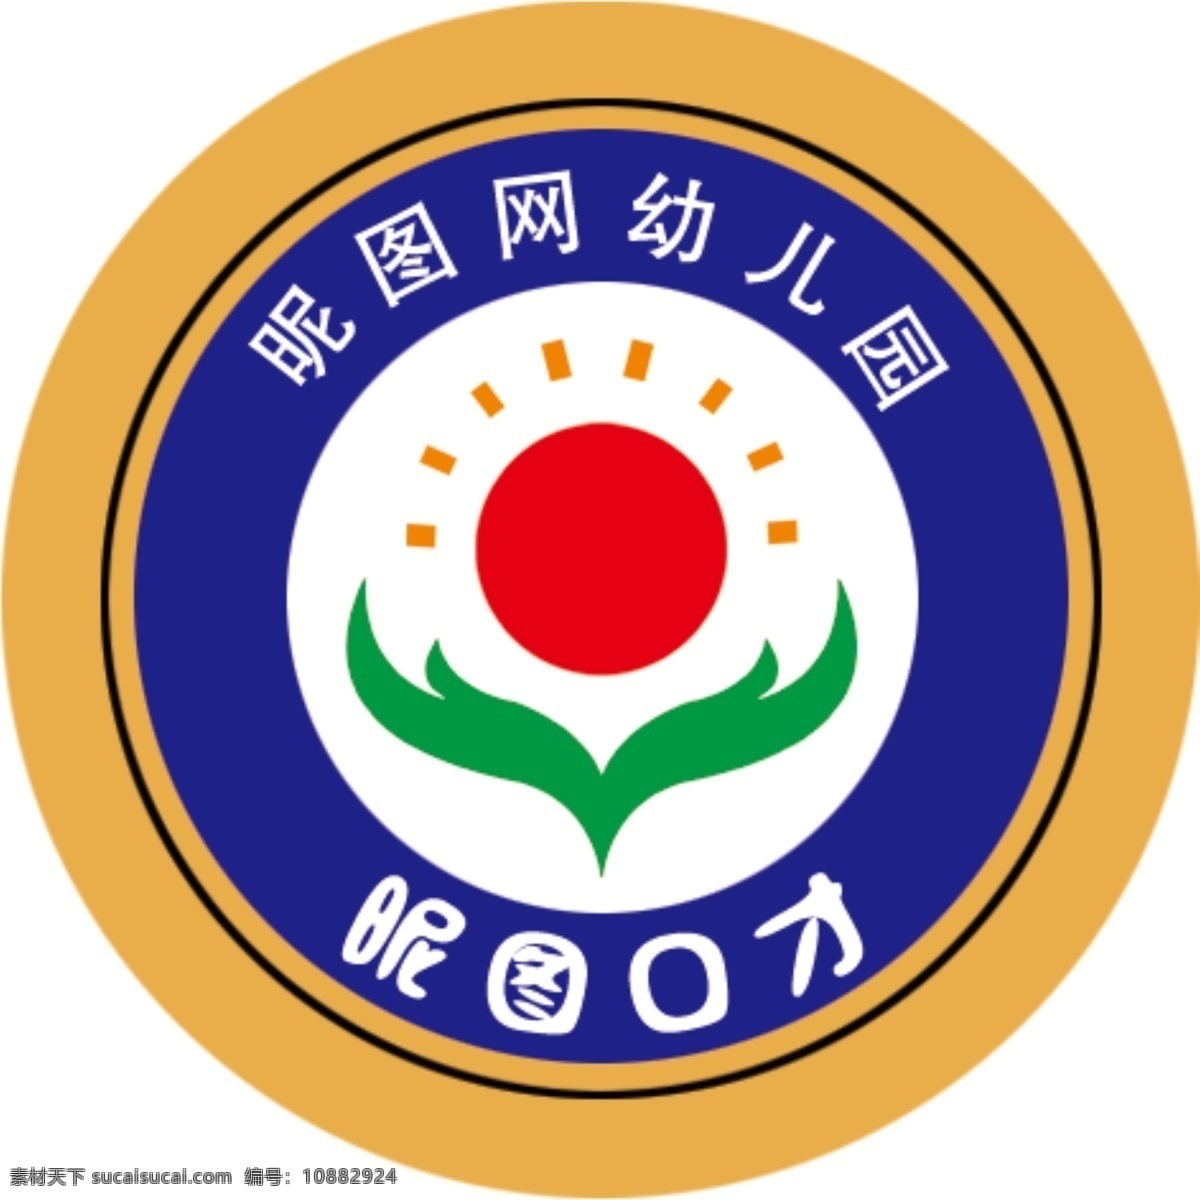 学校logo 太阳 双手托起 校徽 logo 幼儿园 小学